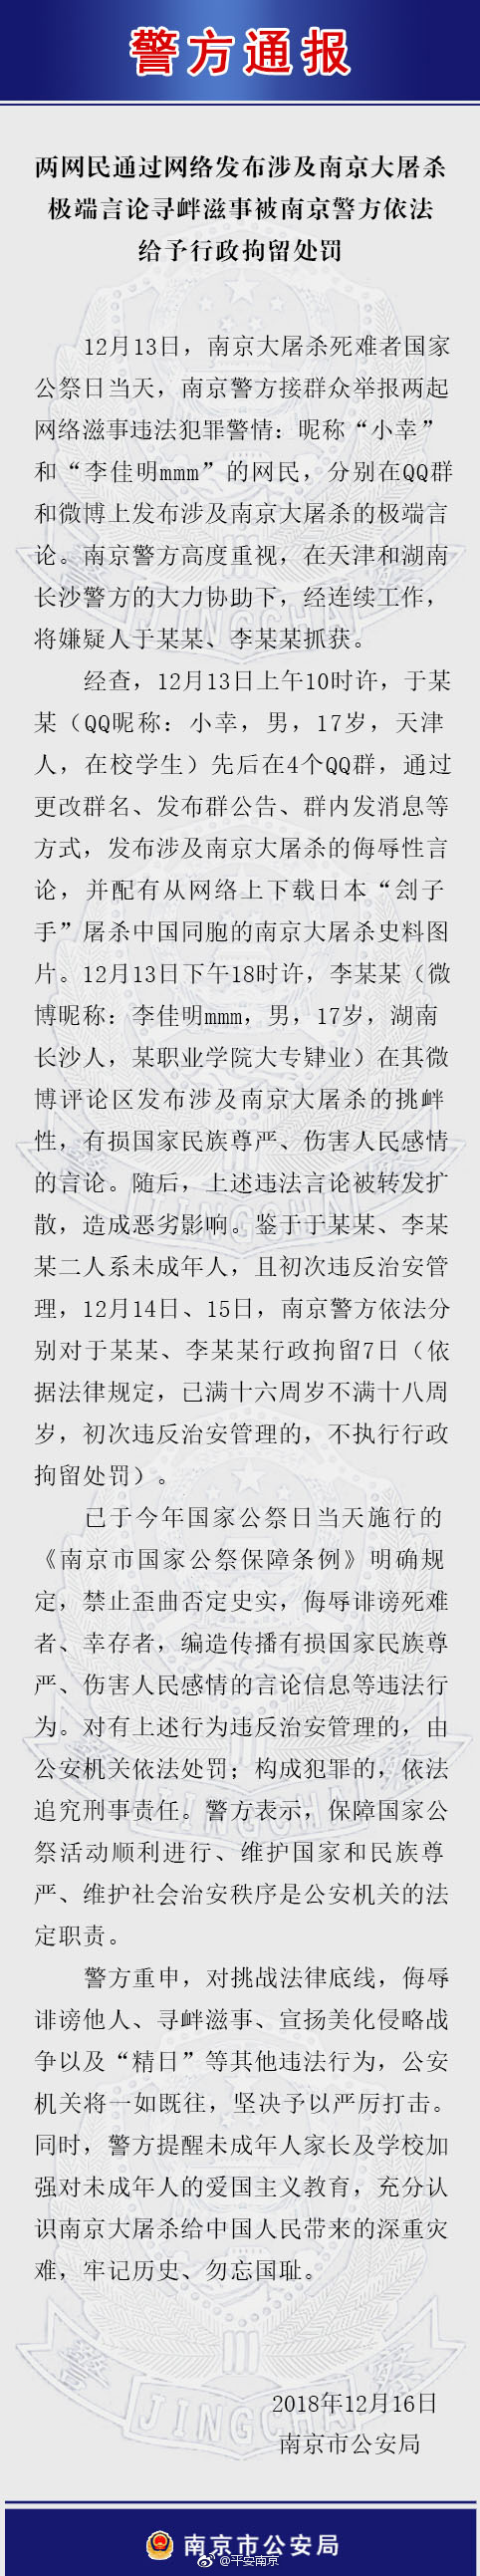 两名网民发布涉及南京大屠杀极端言论 被警方行拘